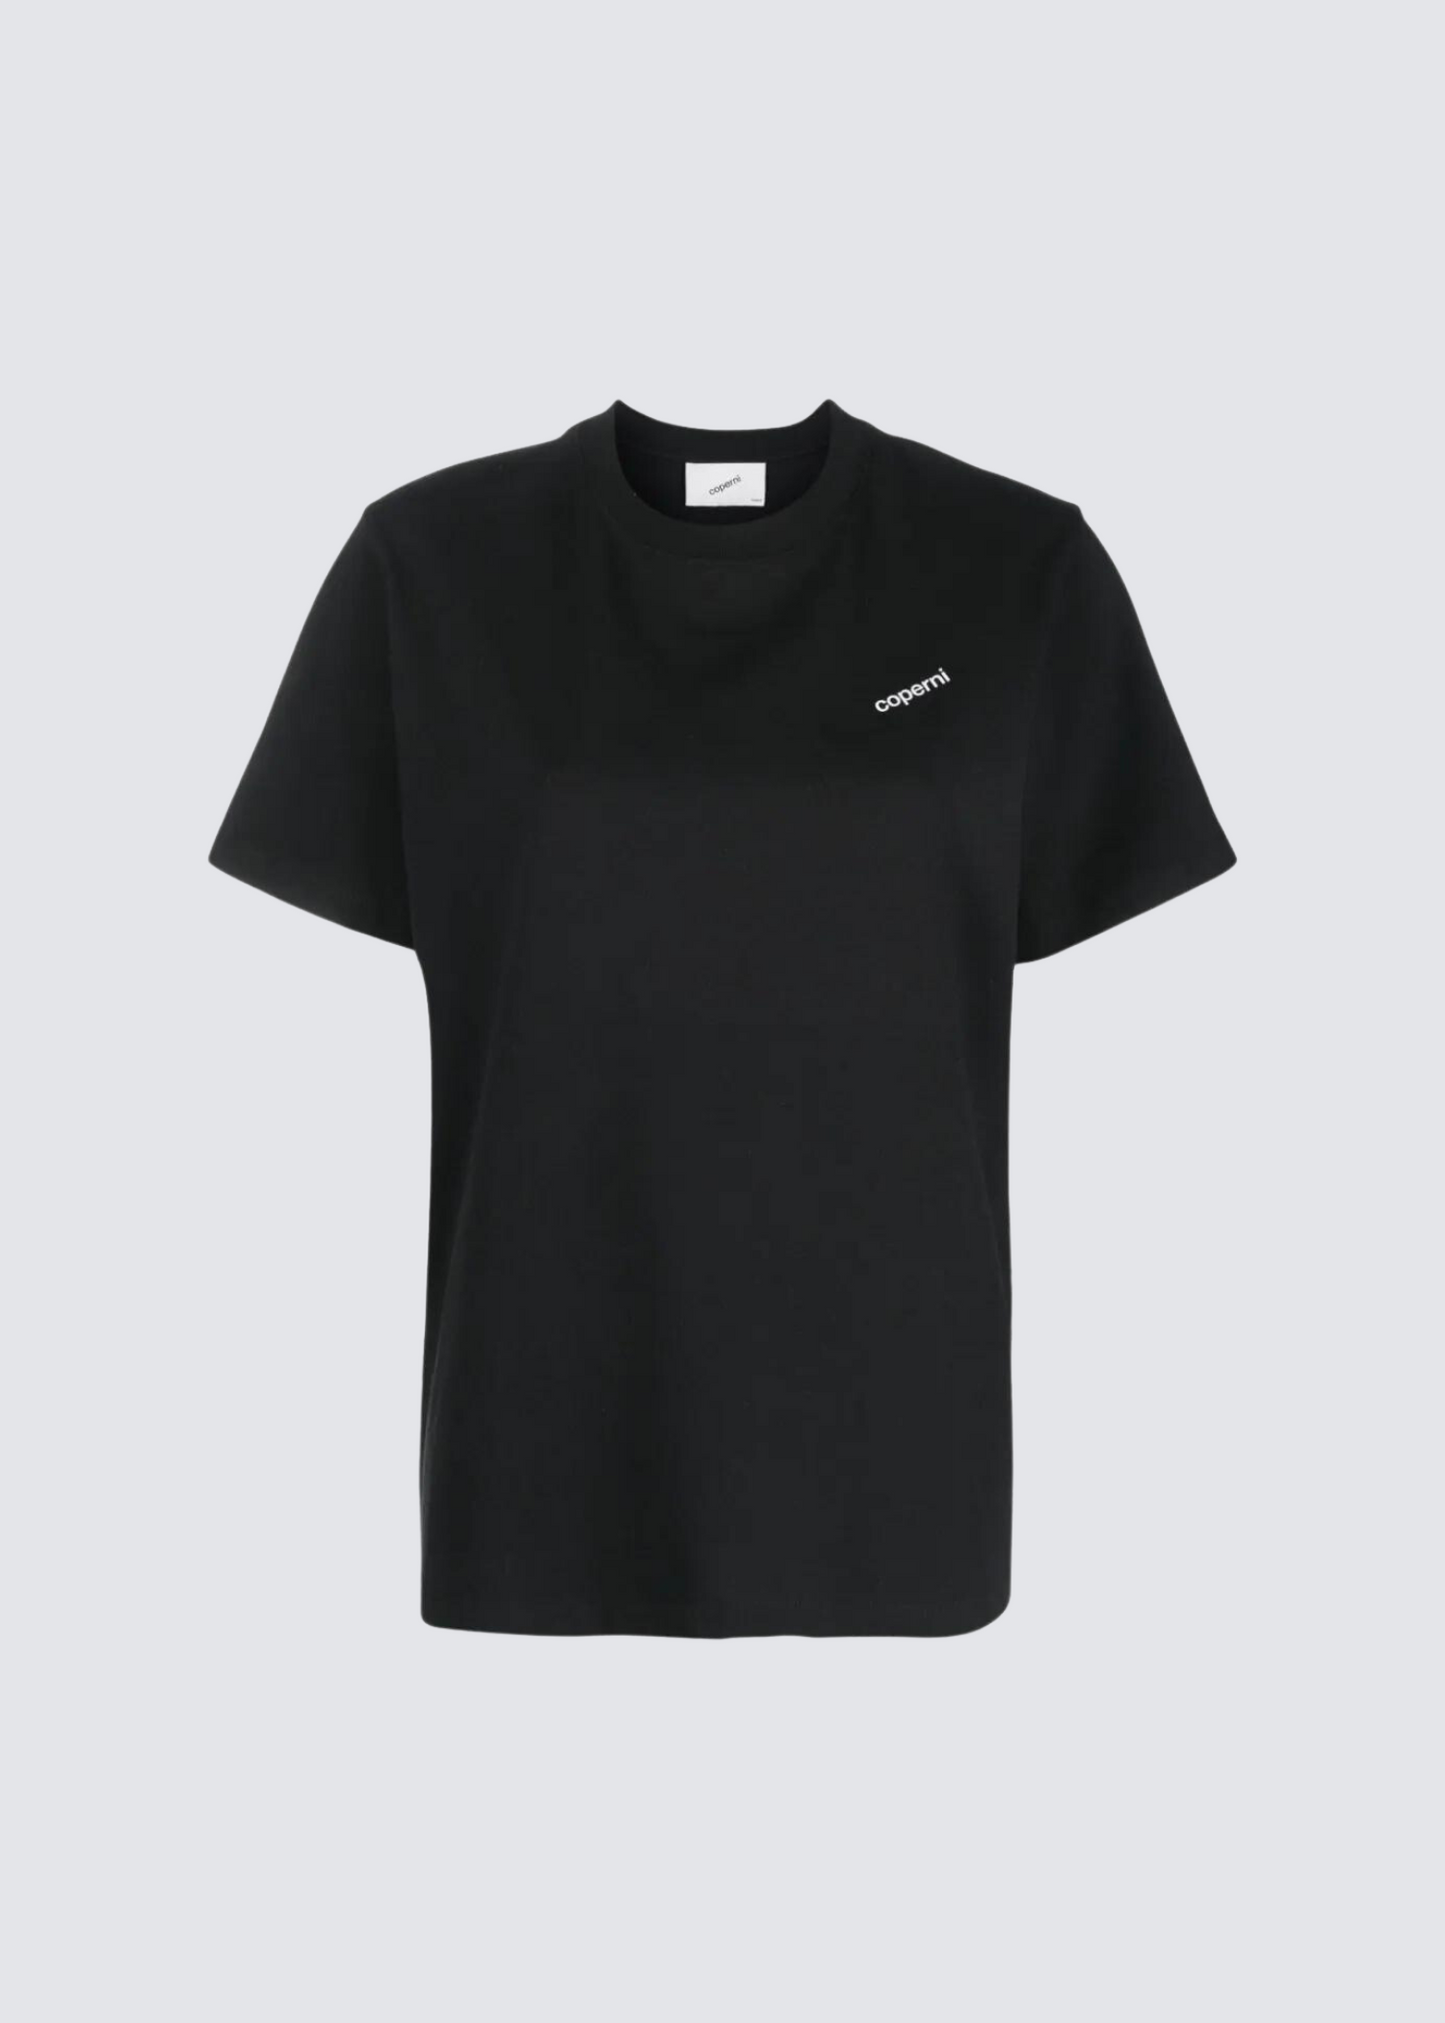 Logo Shirt, Black, T-Shirt